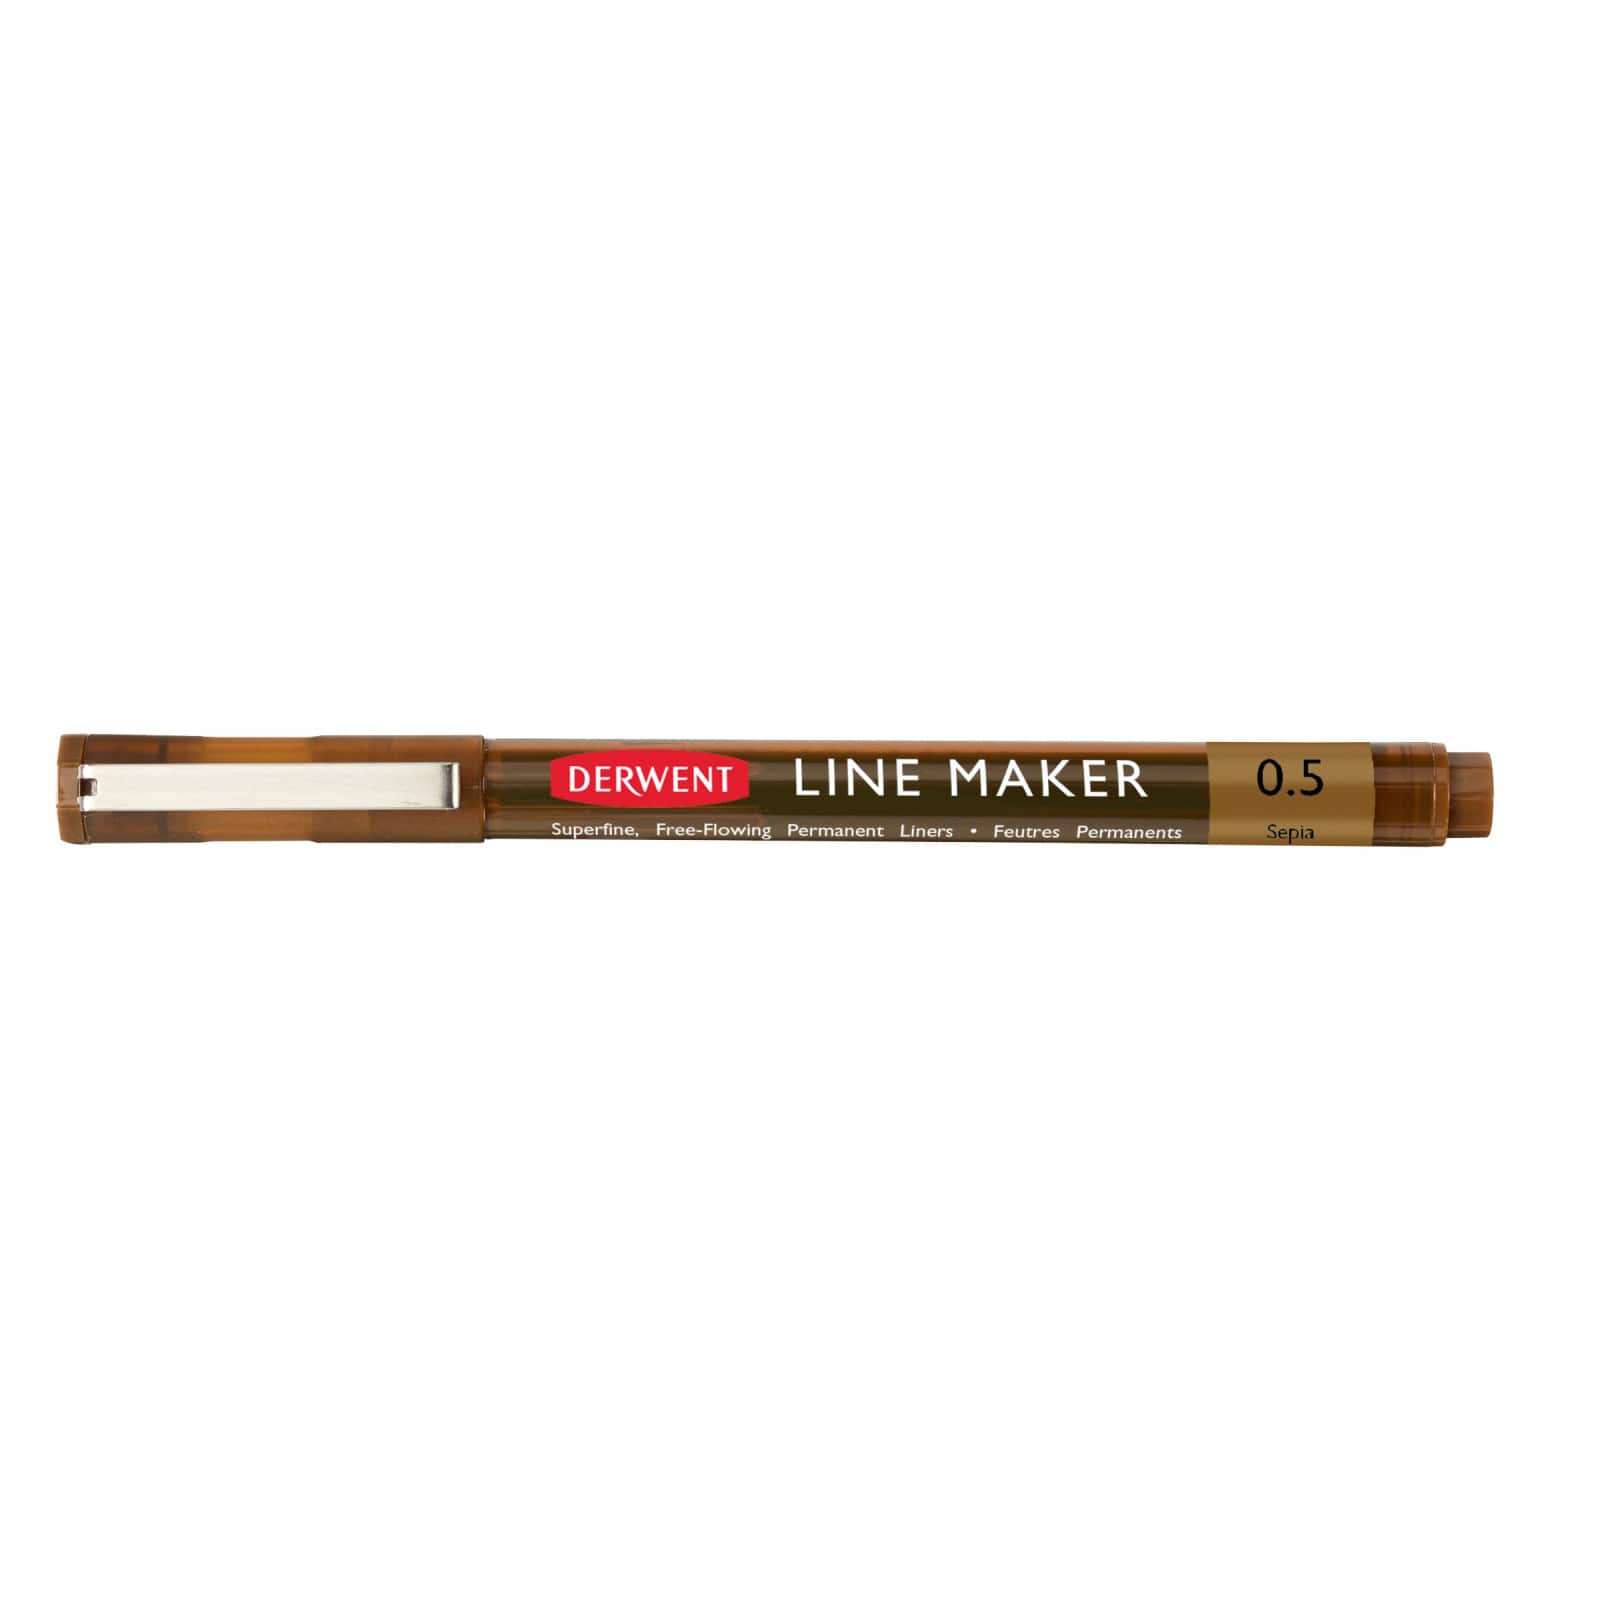 Derwent Superfine Line Maker Pen, Sepia